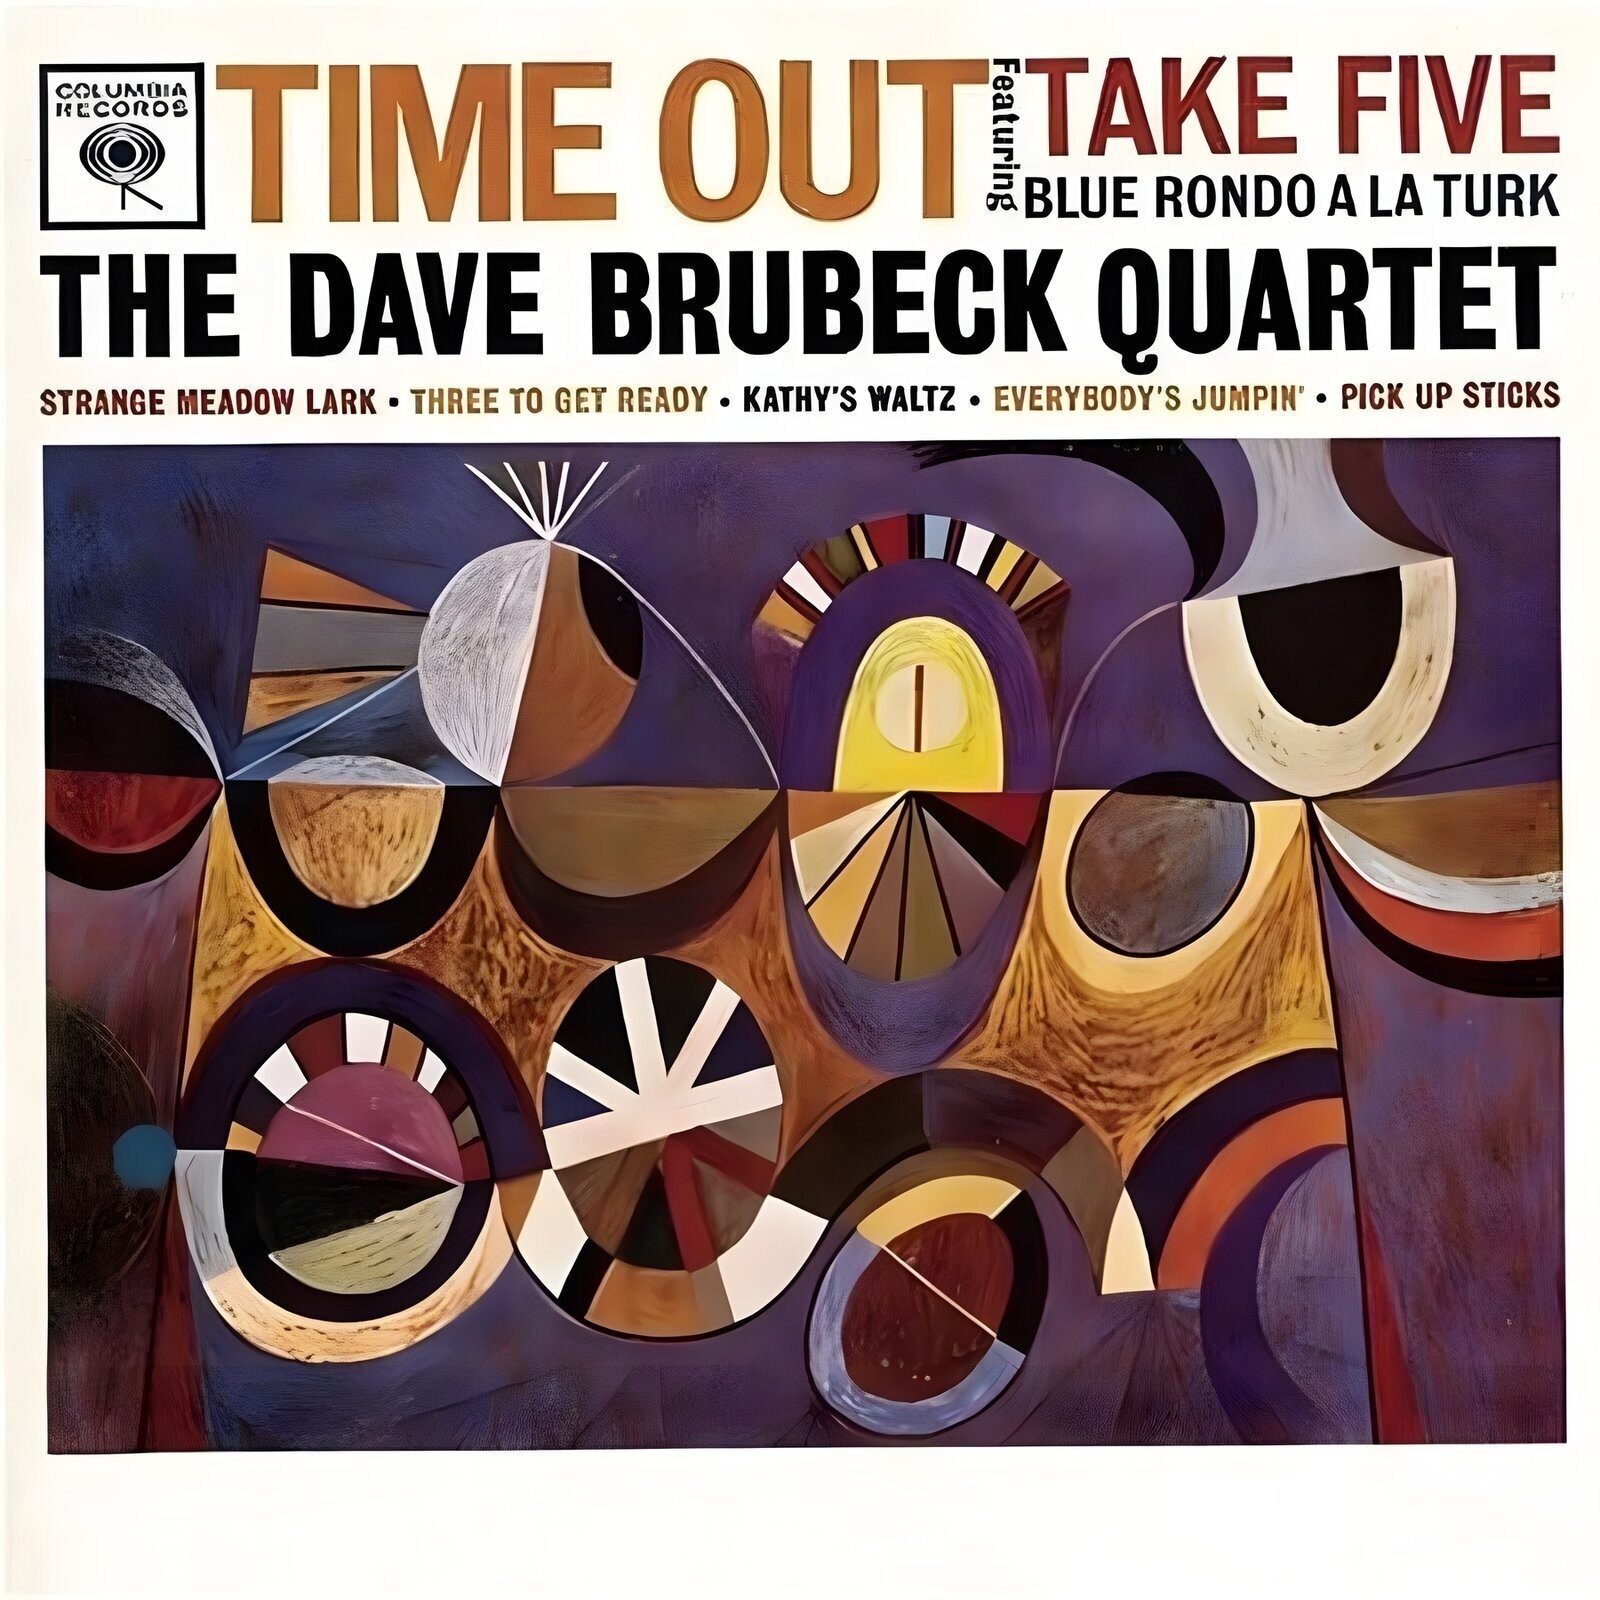 Dave Brubeck Quartet - Time Out (Reissue) (LP) Dave Brubeck Quartet